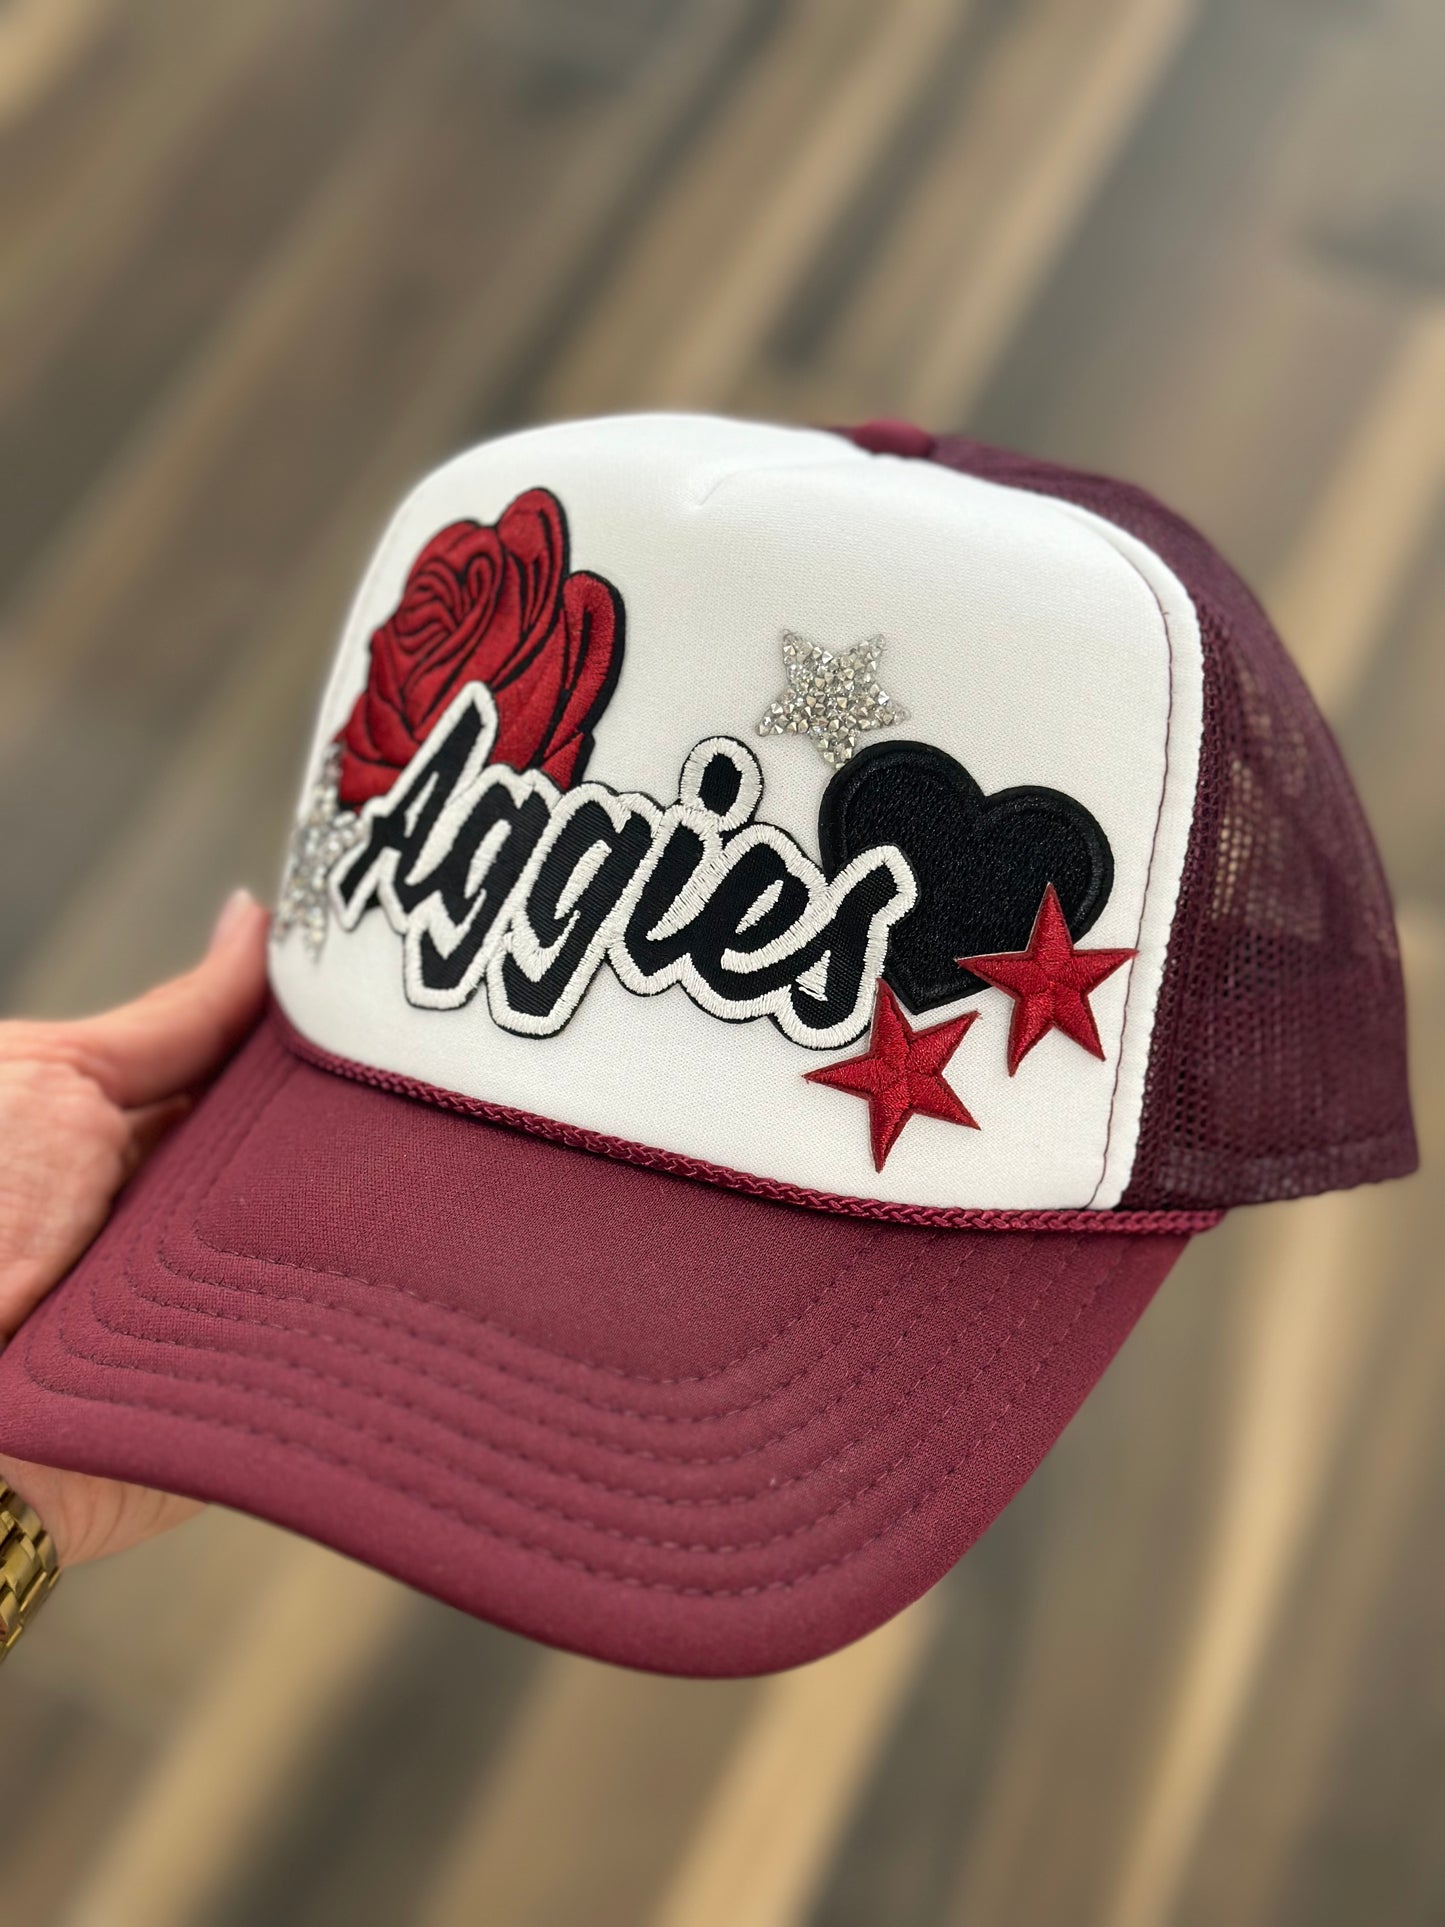 Aggies Trucker Cap